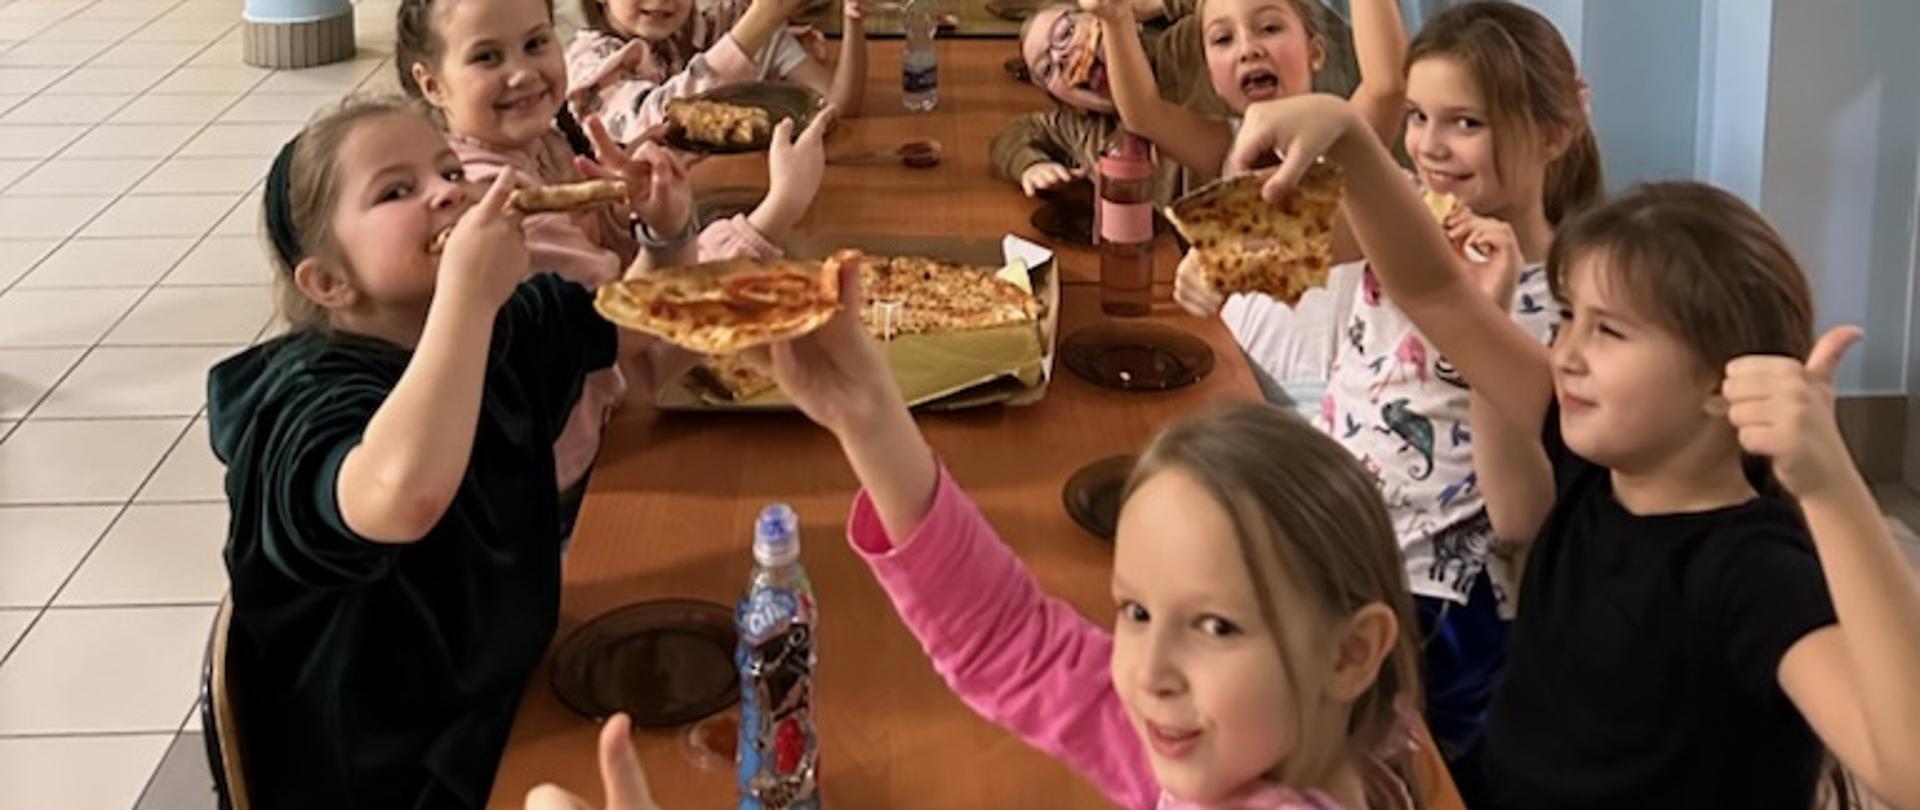 Na zdjęciu są dzieci, które jedzą pizzę. Na pierwszym planie widać dziewczynkę w różowej bluzie o jasnych włosach, dalej siedzą dwie dziewczynki w czarnych koszulkach.